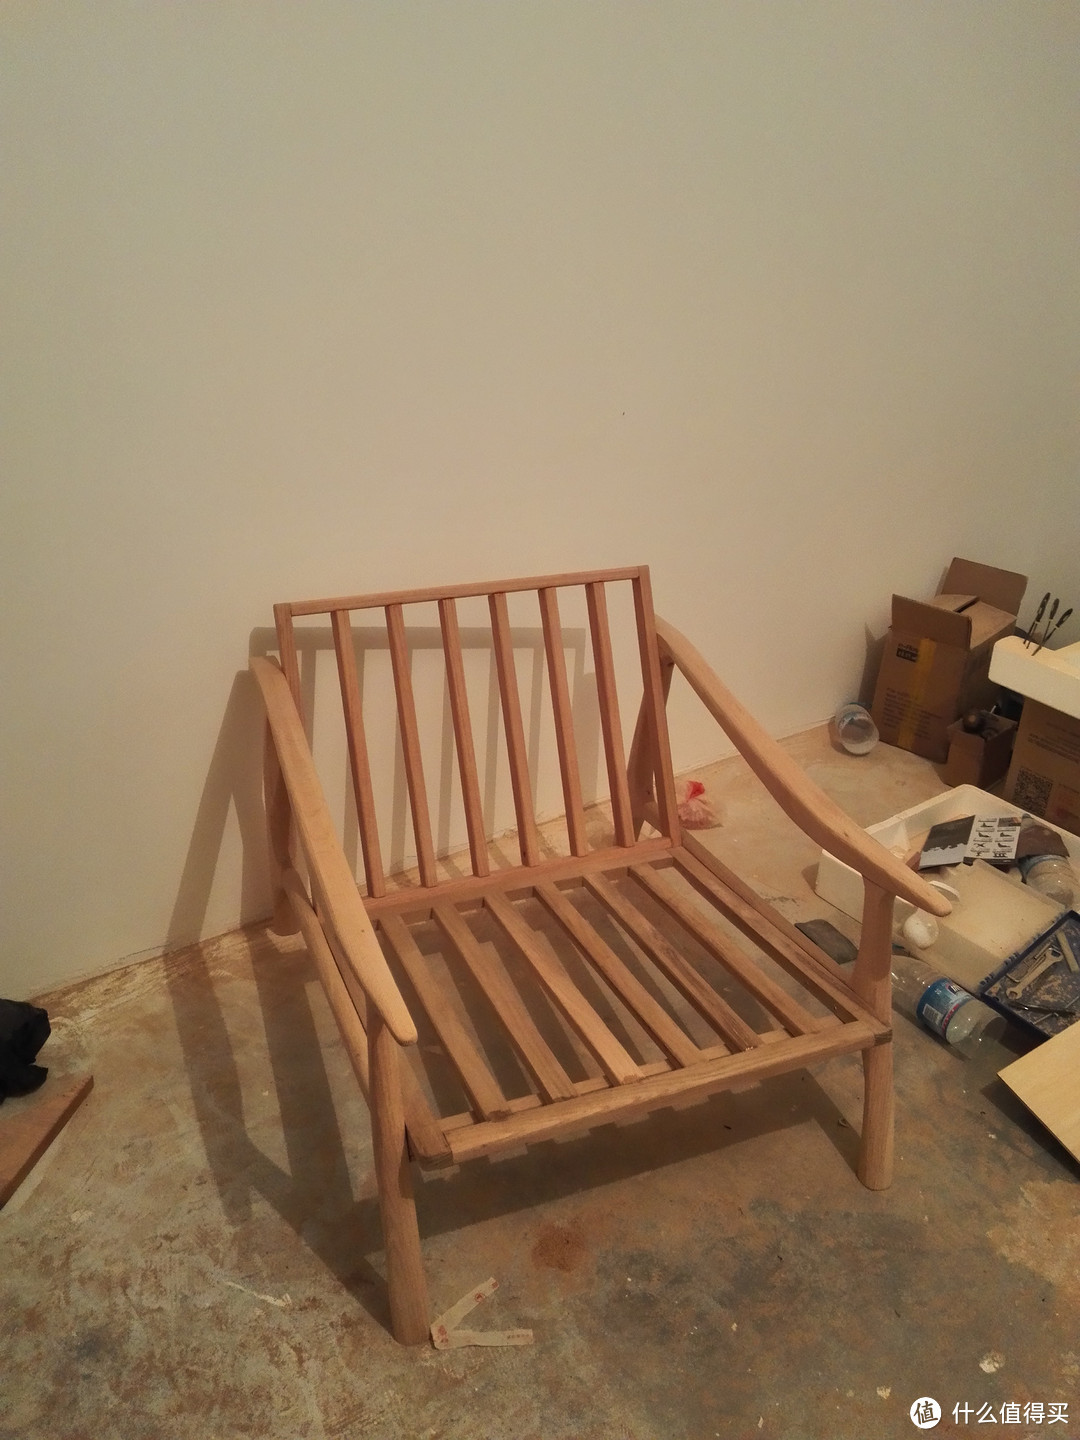 15天造了一把木椅后，80后夫妻开挂，DIY出所有家具